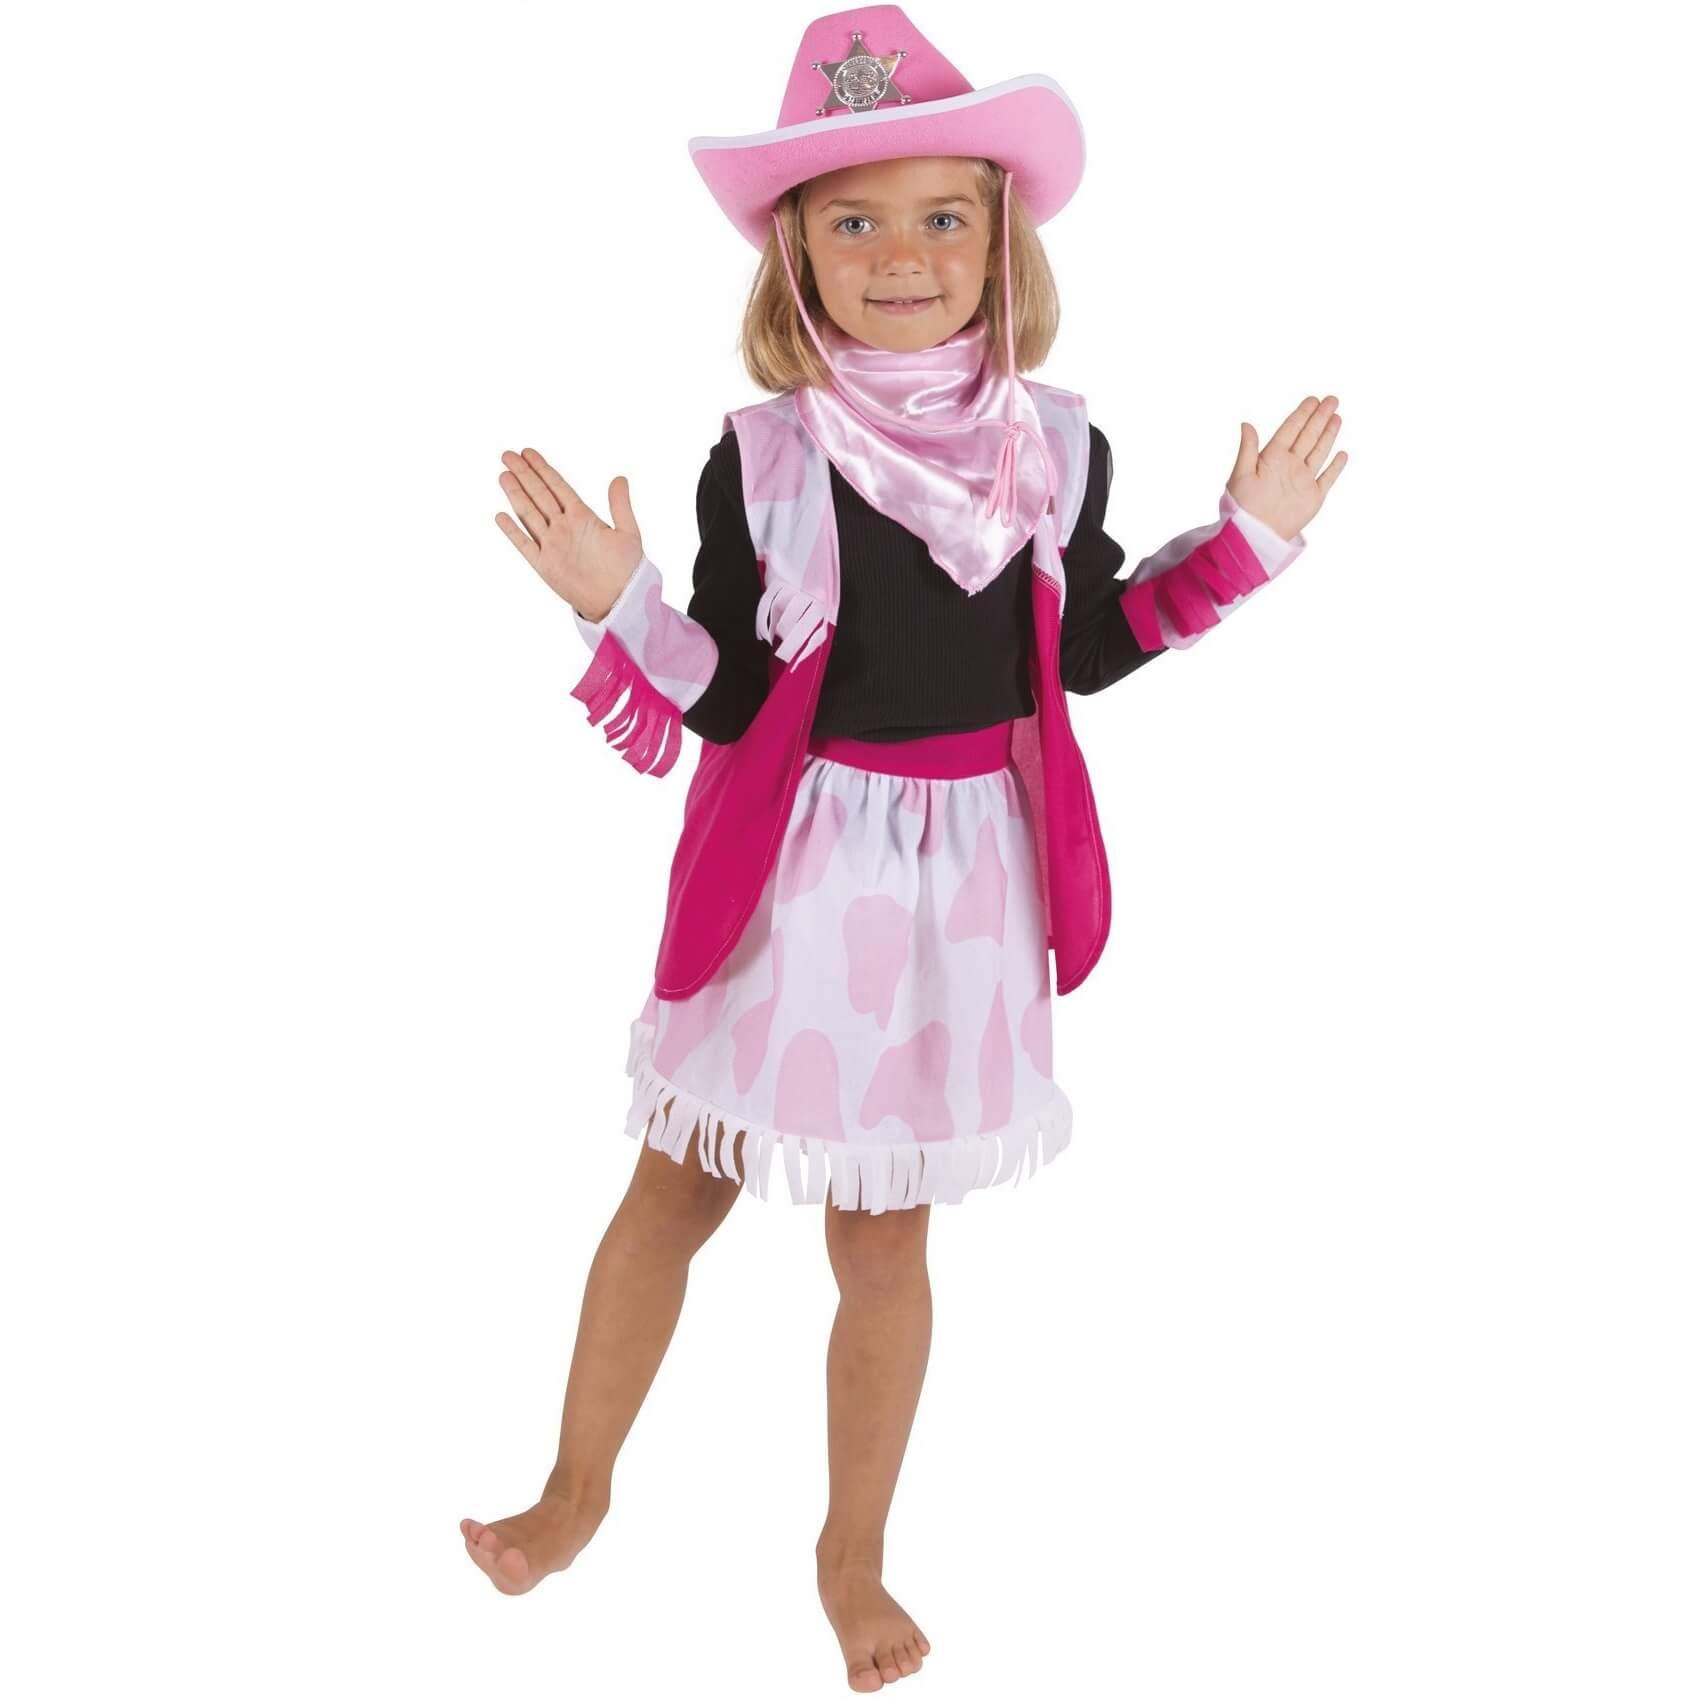 21007 kit accessoire de deguisement enfant set cowgirl amerique